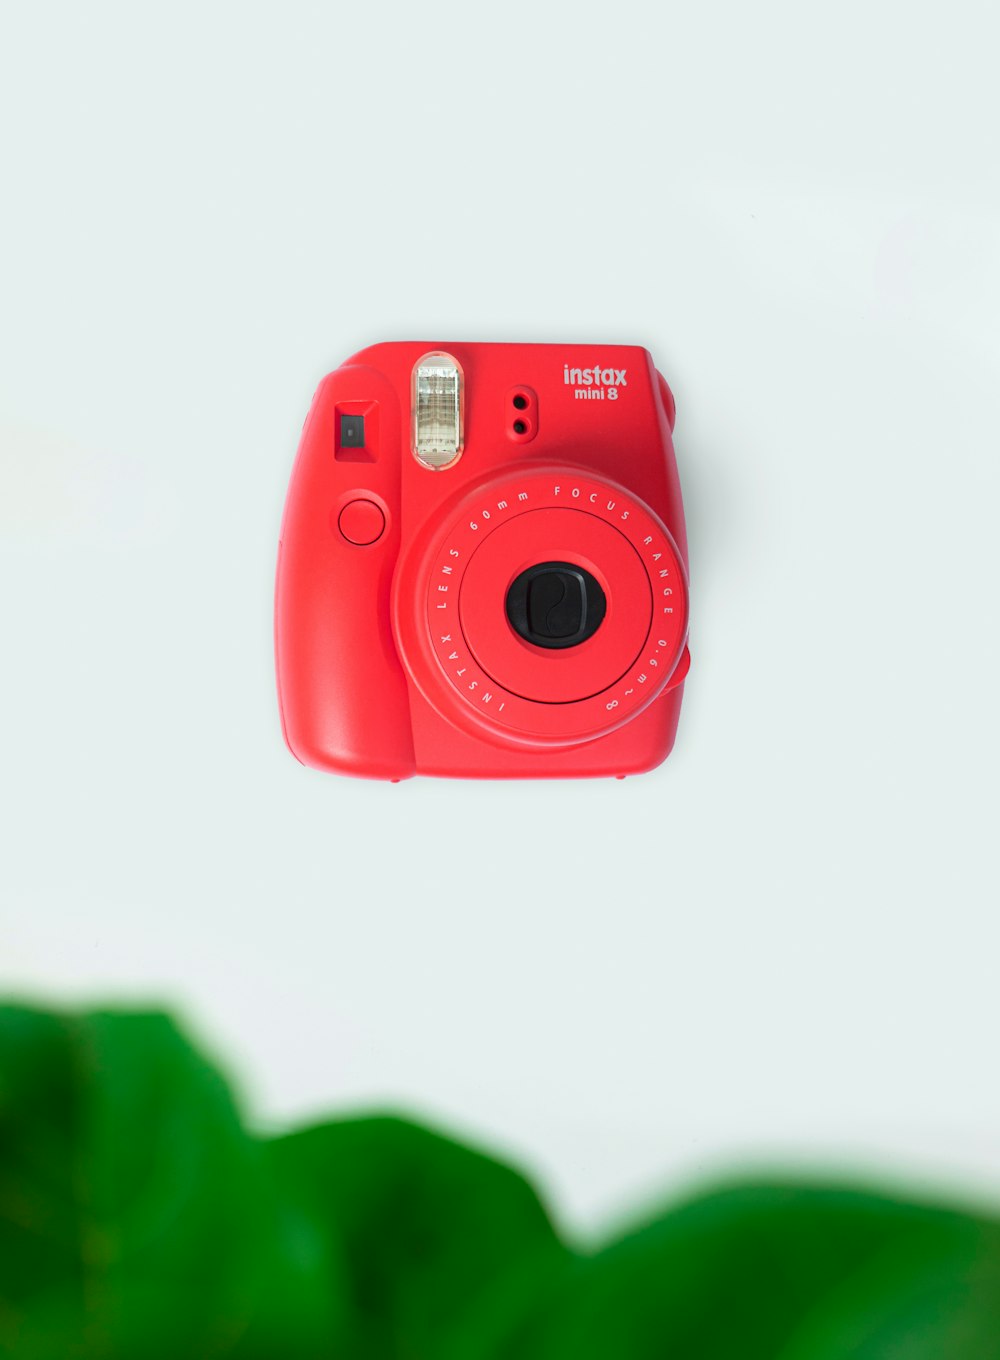 赤いニコンポイントアンドシュートカメラ